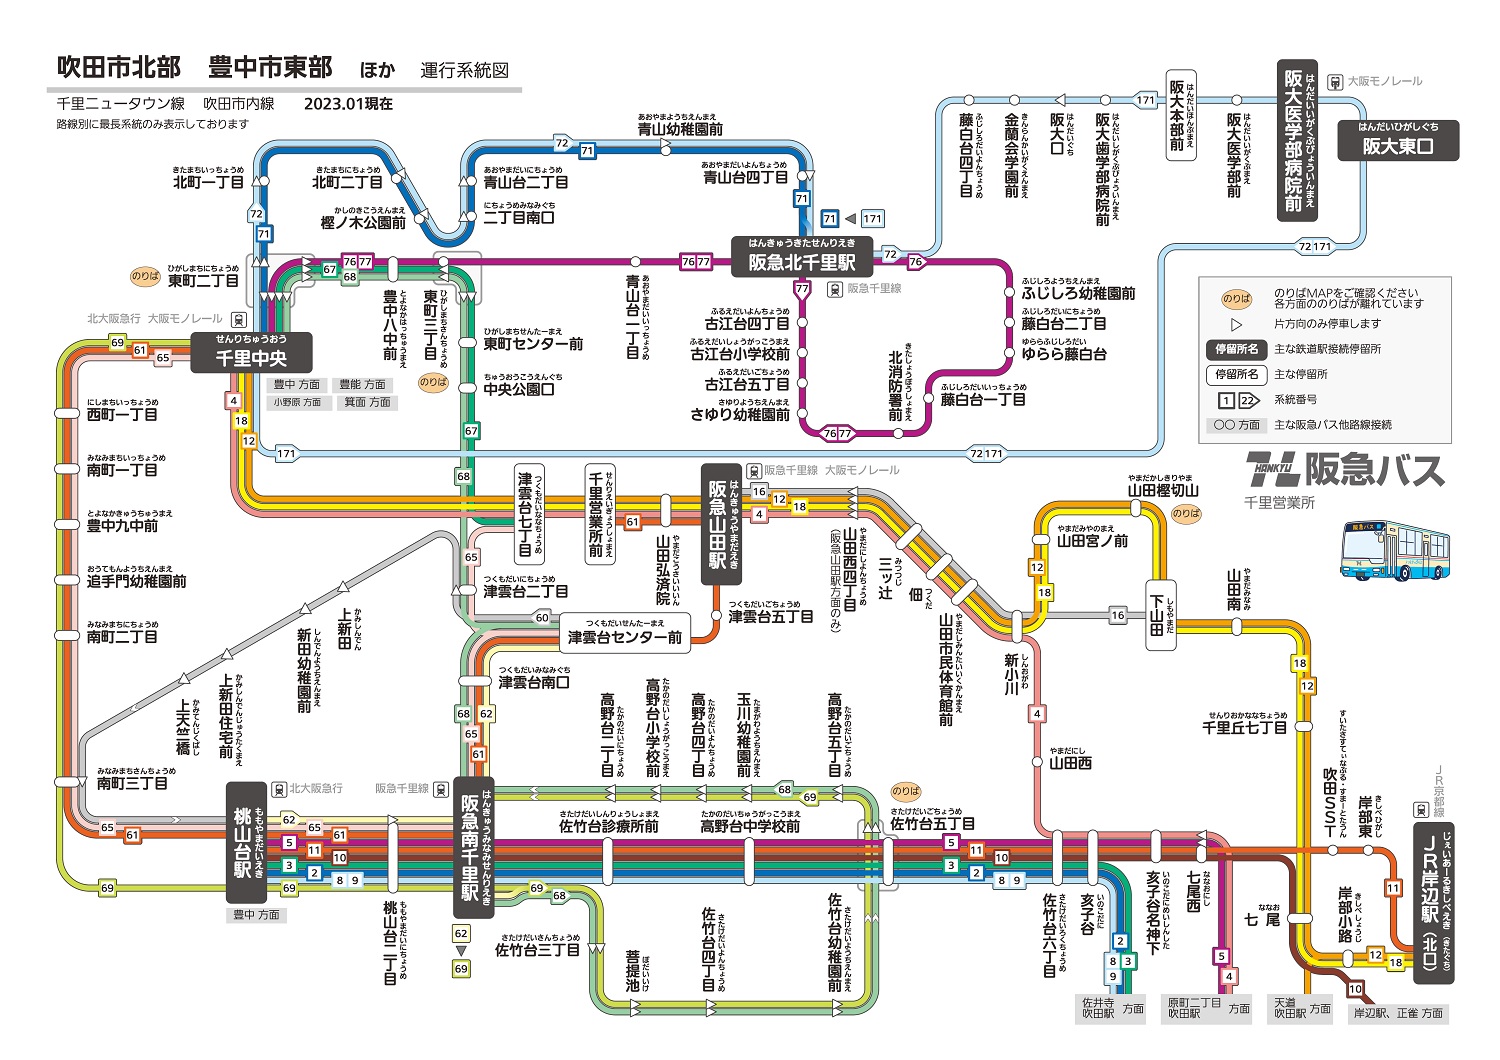 大阪市交通局 営業案内 バス トローリーバス 路線図 系統図 定期観光 